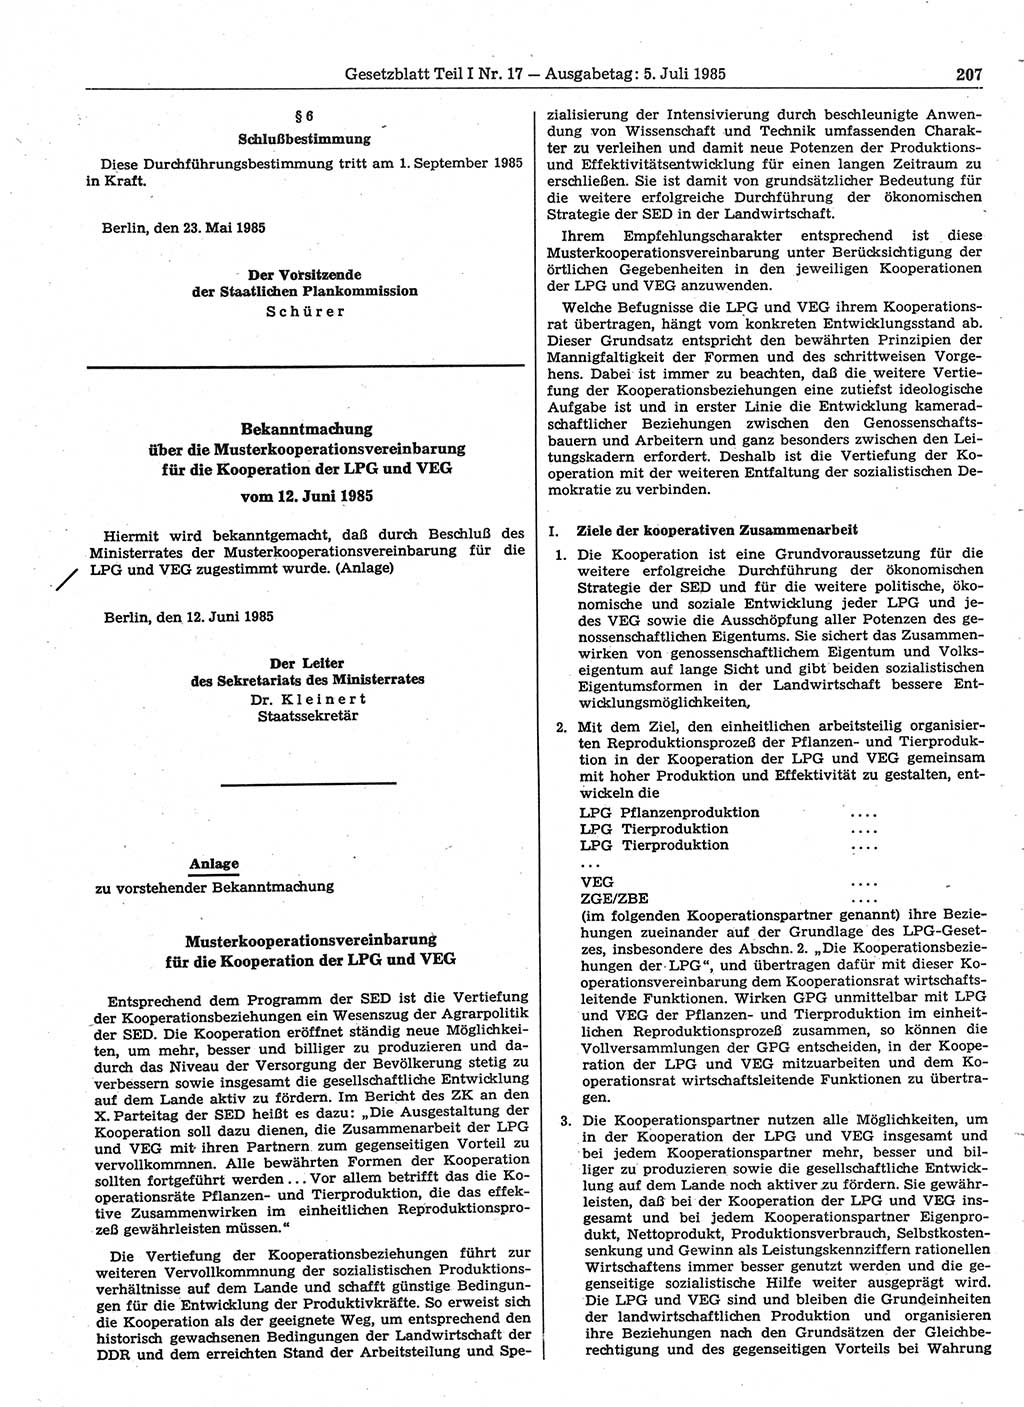 Gesetzblatt (GBl.) der Deutschen Demokratischen Republik (DDR) Teil Ⅰ 1985, Seite 207 (GBl. DDR Ⅰ 1985, S. 207)